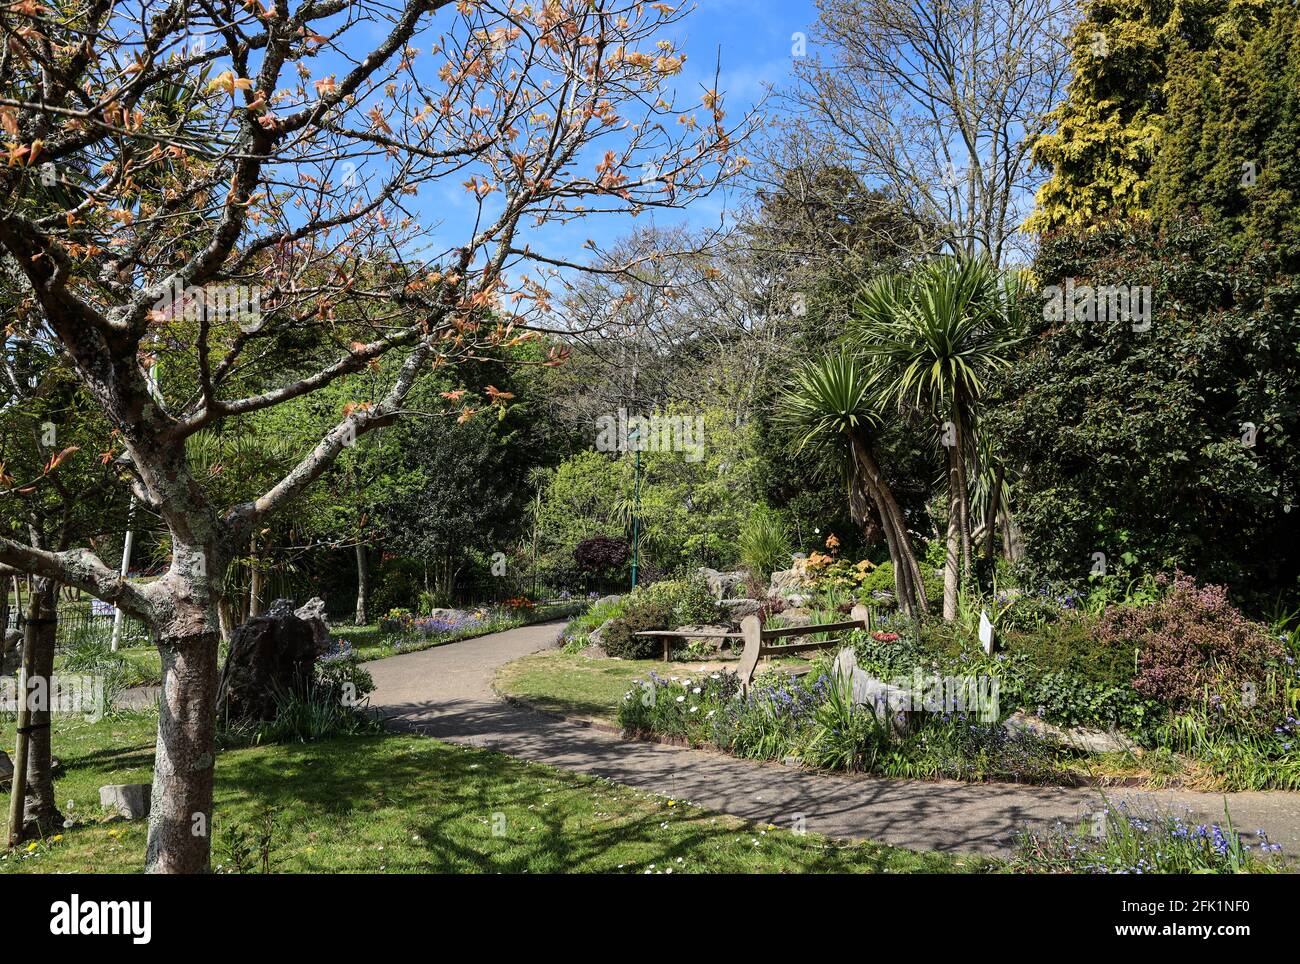 Der hübsche Memorial Garden in einem eingezäunten Gebiet Ion Devonport Park, wo Denkmäler aller Art zu finden sind. Der Devonport Park in Plymouth ist oft Ref Stockfoto